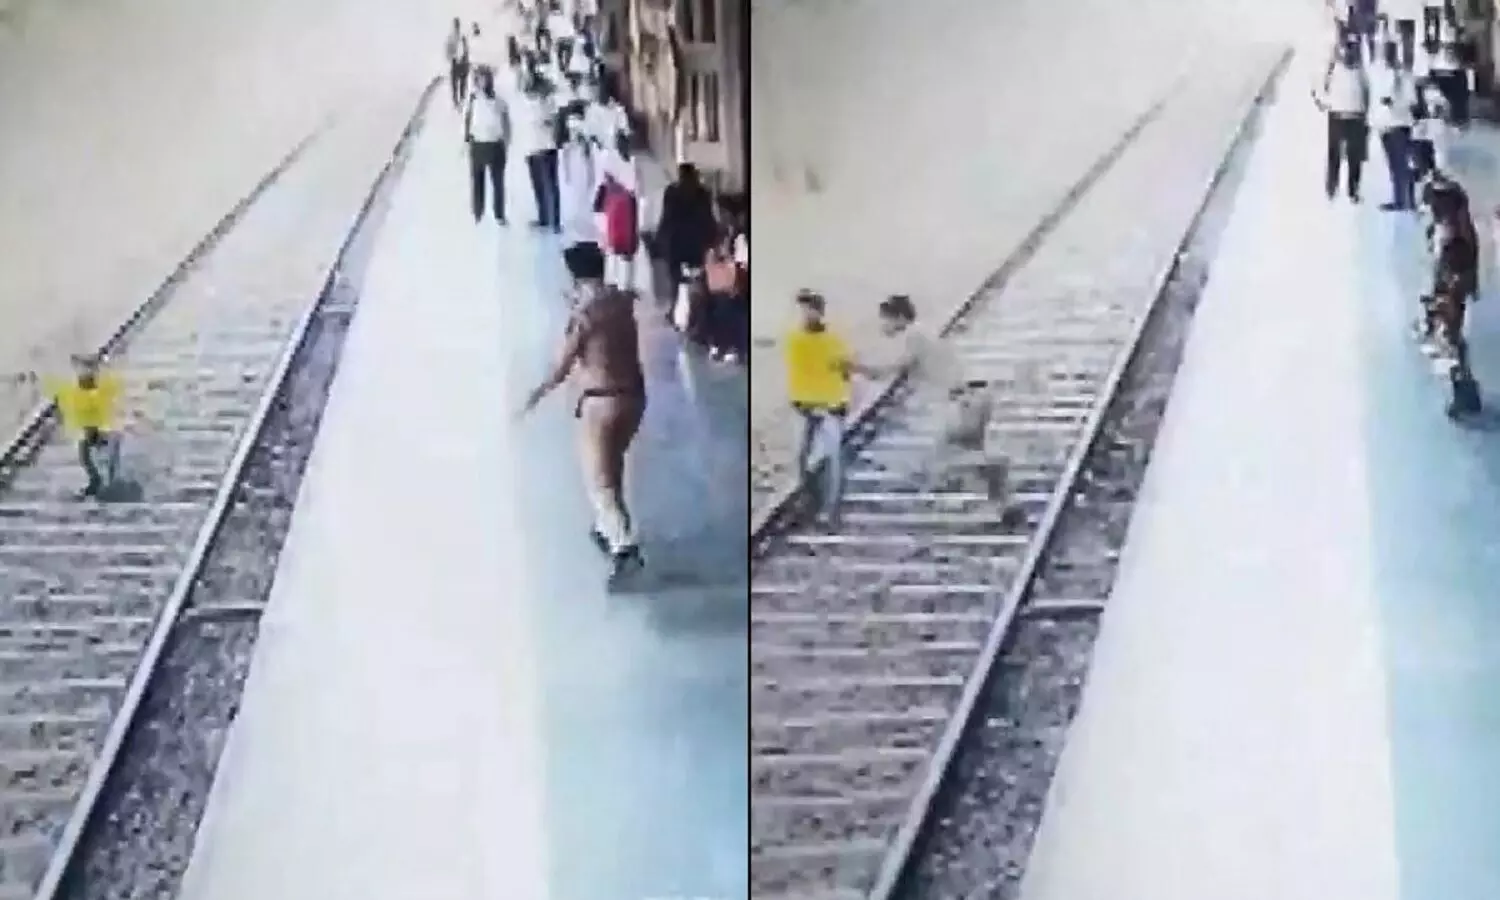 Thane Railway Station Video: जान देने के लिए ट्रेन के सामने आया युवक, सिपाही ने बचाया, देखें वीडियो